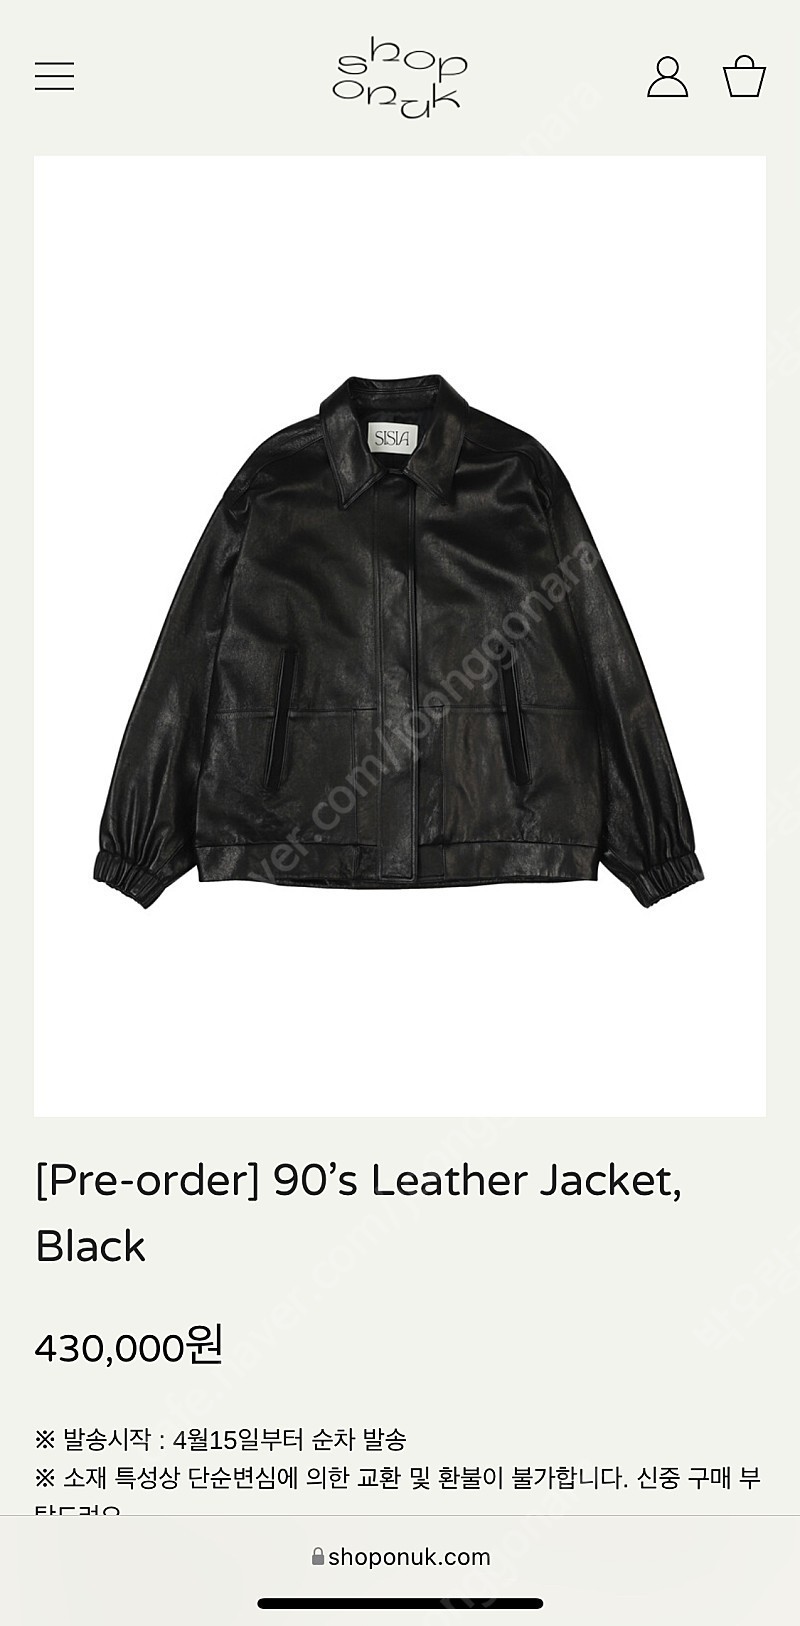 [샵오눅] 시시아사우르스 90's leather jaket 삽니다